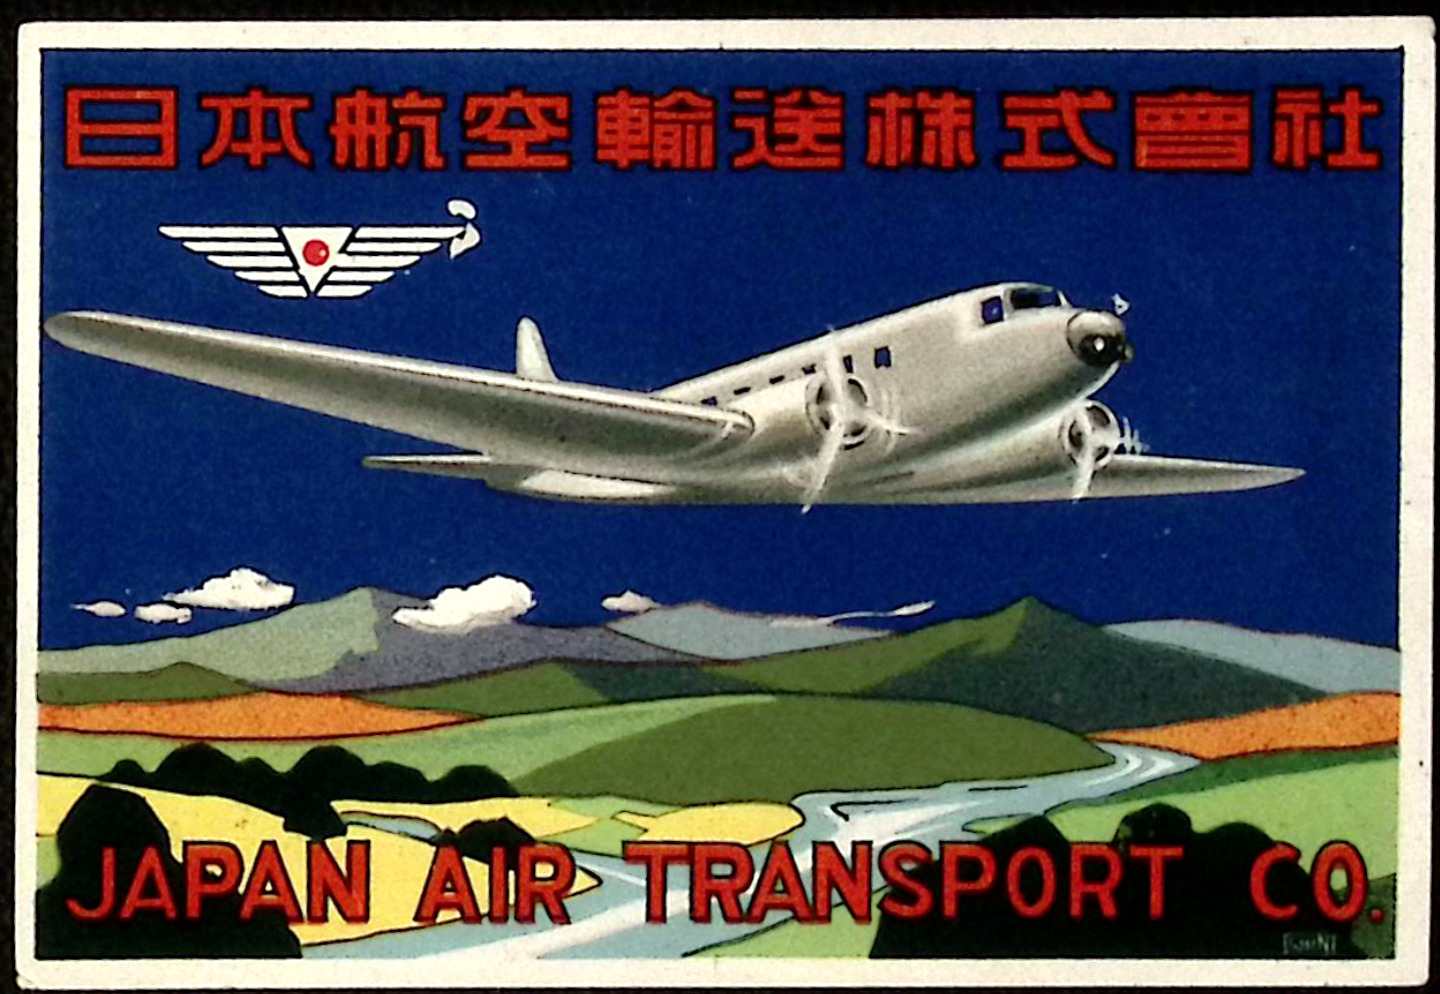 1937 Japan Air Transport Co Litho Luggage Label Aviation Travel Ephemera